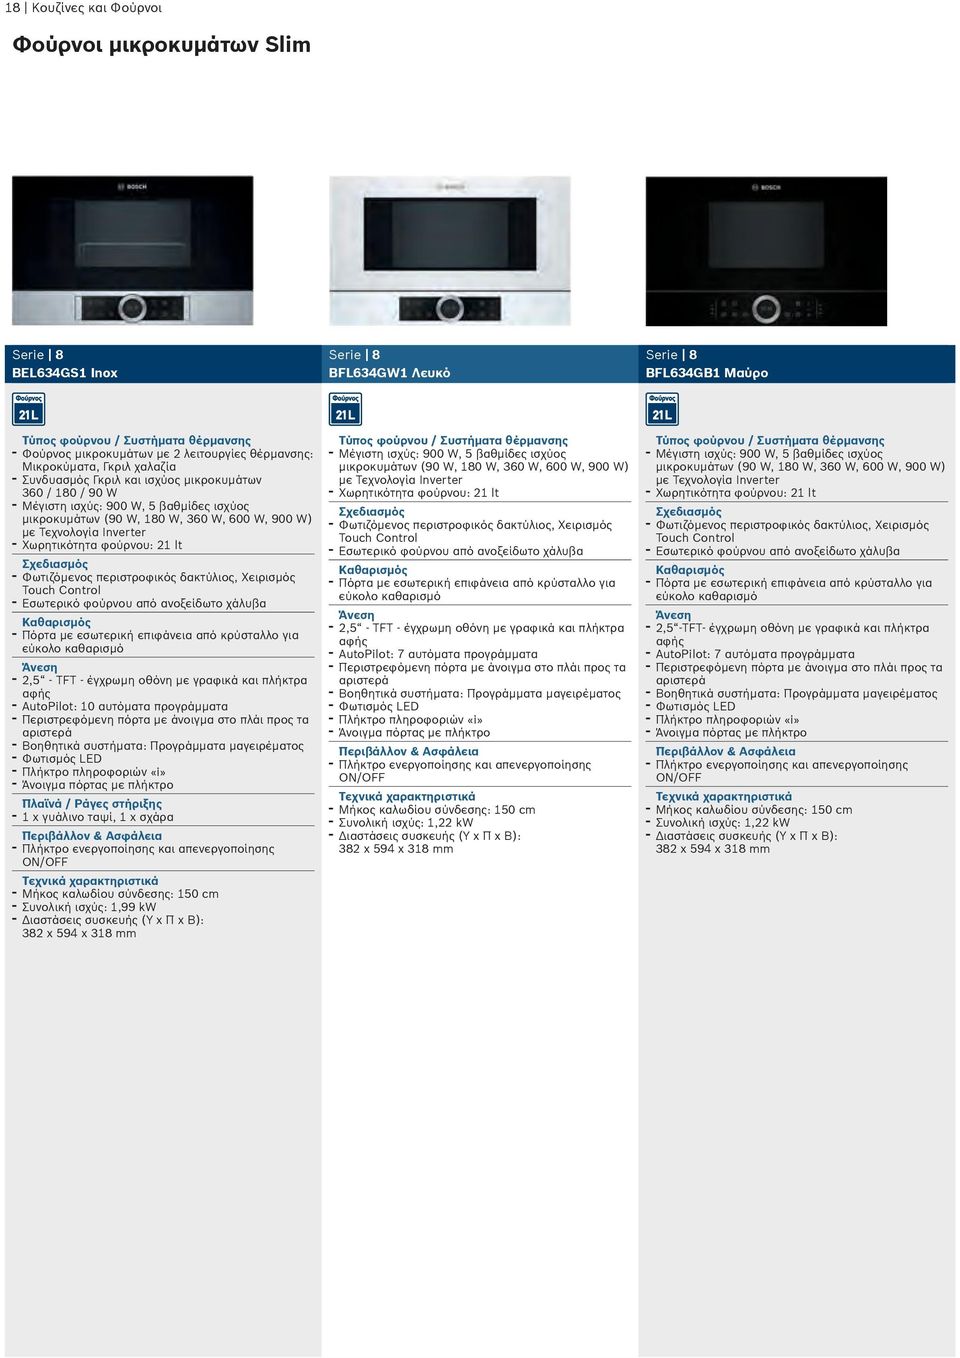 Τεχνολογία Inverter - Χωρητικότητα φούρνου: 21 lt Σχεδιασμός - Φωτιζόμενος περιστροφικός δακτύλιος, Χειρισμός Touch Control - Εσωτερικό φούρνου από ανοξείδωτο χάλυβα Καθαρισμός - Πόρτα με εσωτερική